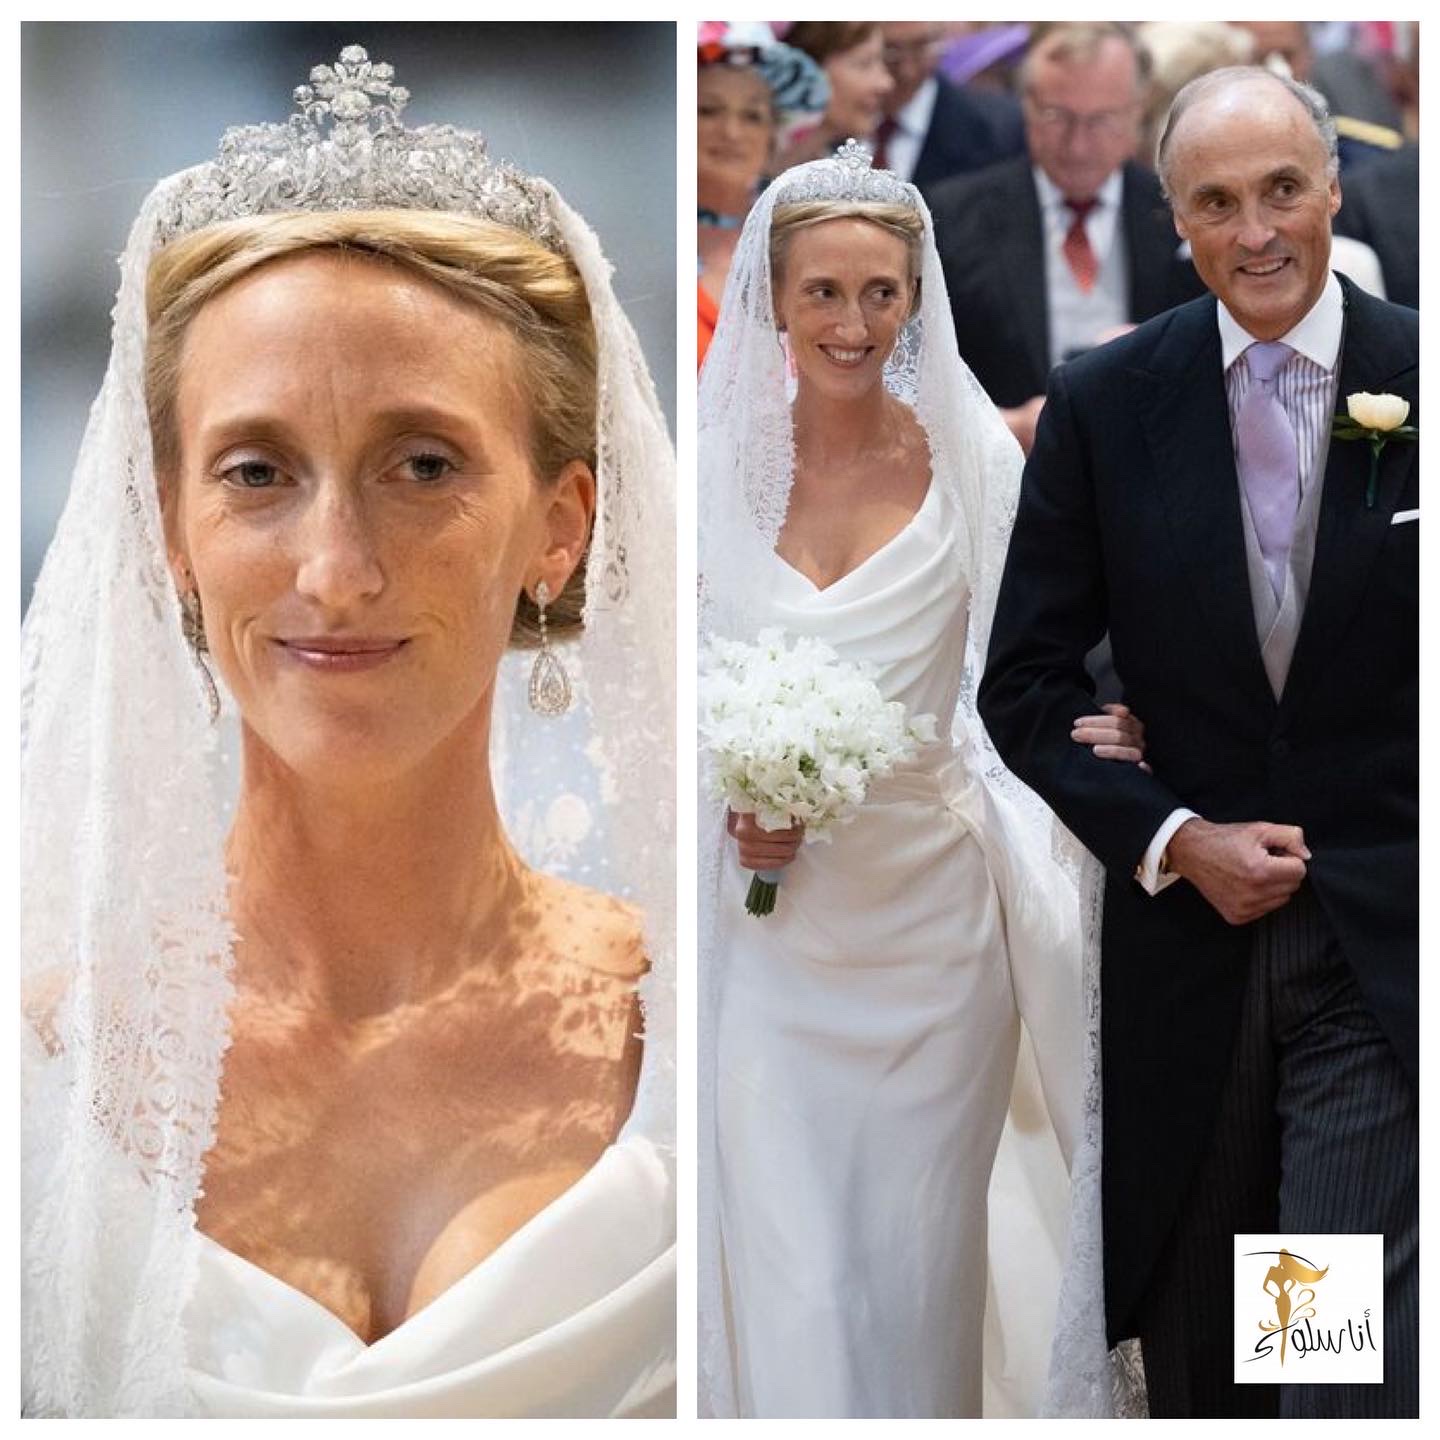 Prinsesse Maria Laura af Belgiens bryllup med sin marokkanske forlovede, William Asfi